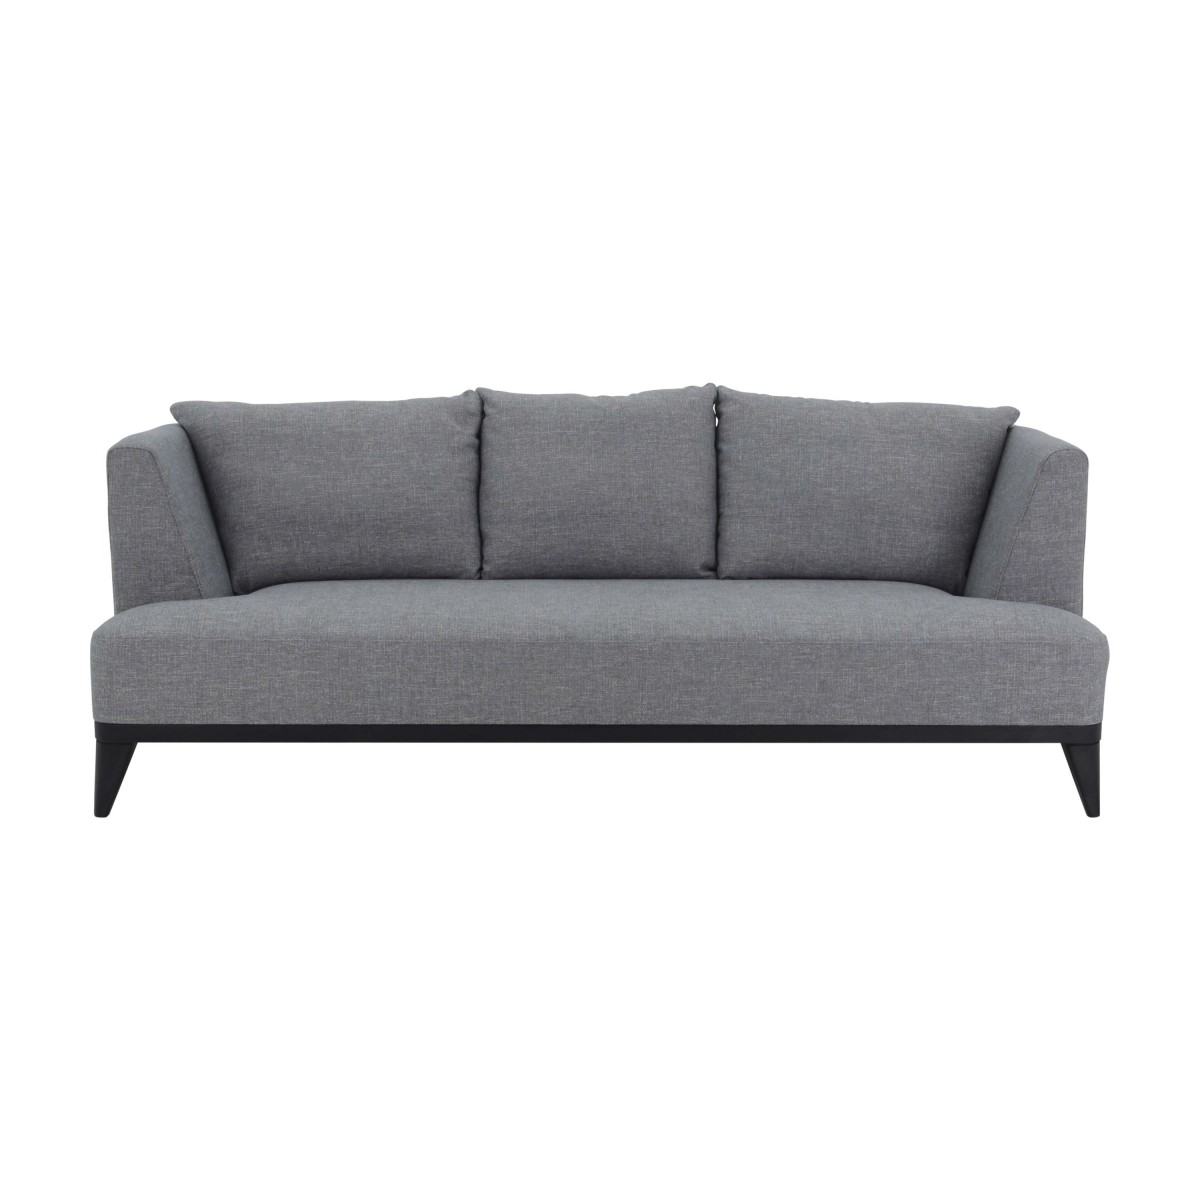 italian modern sofa celine 9198